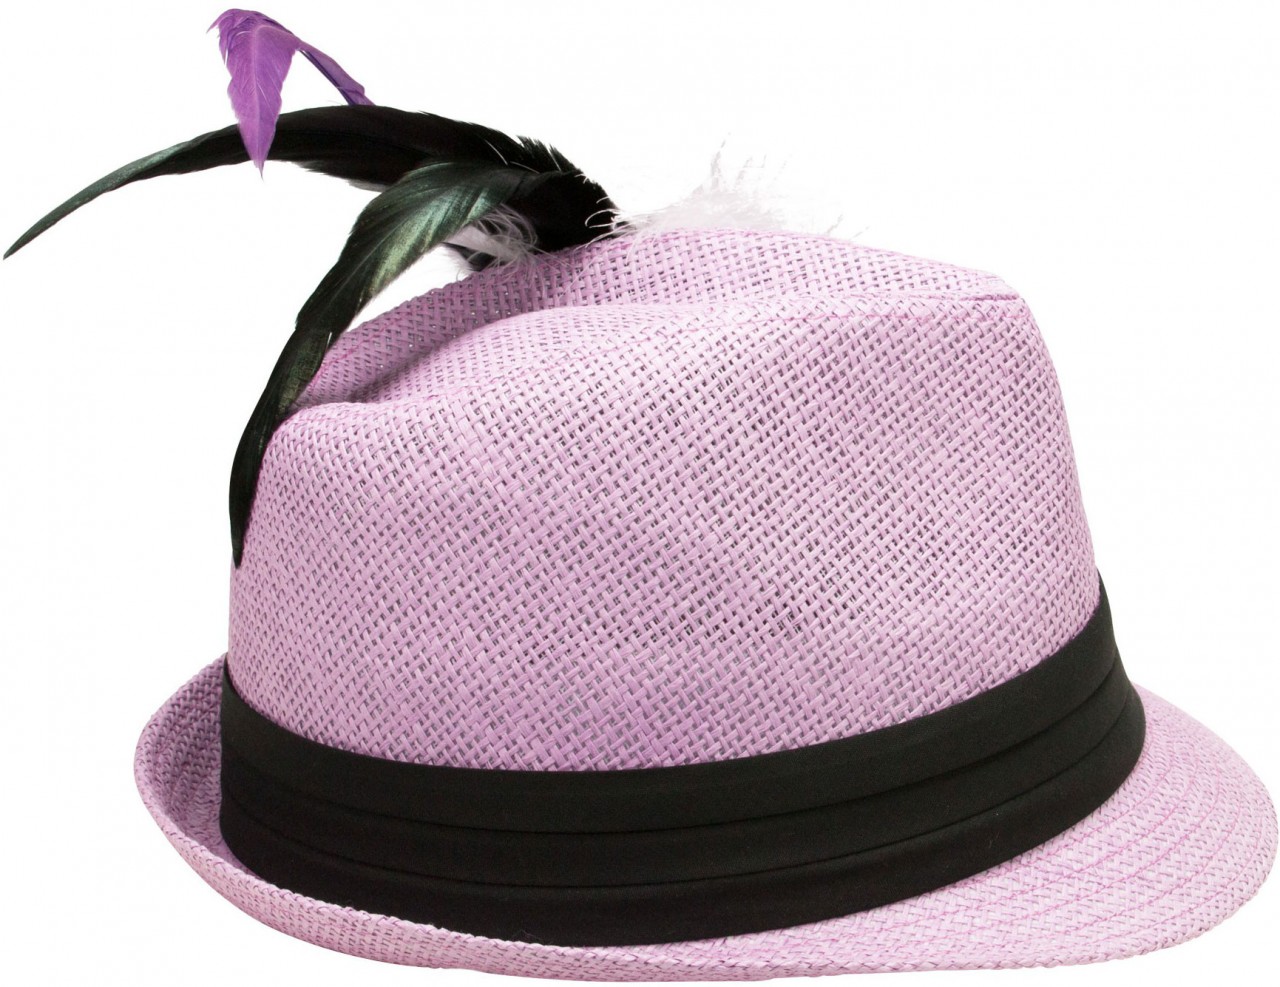 Aperçu: Chapeau de Trachten en paille violet clair